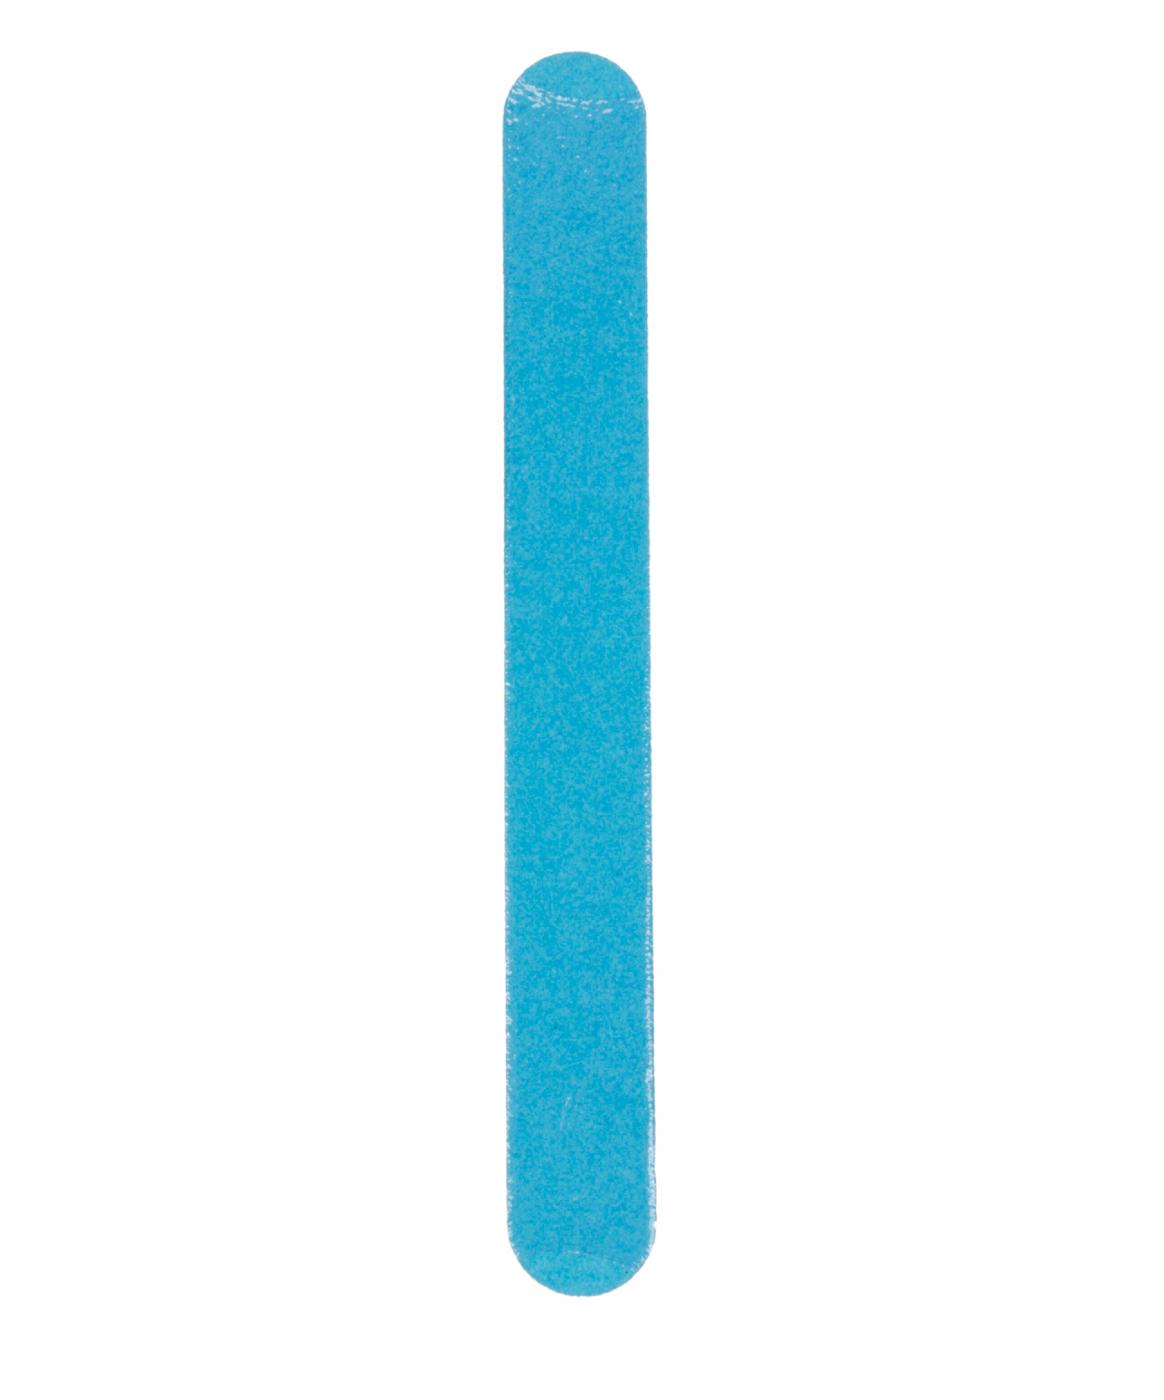 H-E-B Professional Blue Salon Board; image 2 of 2